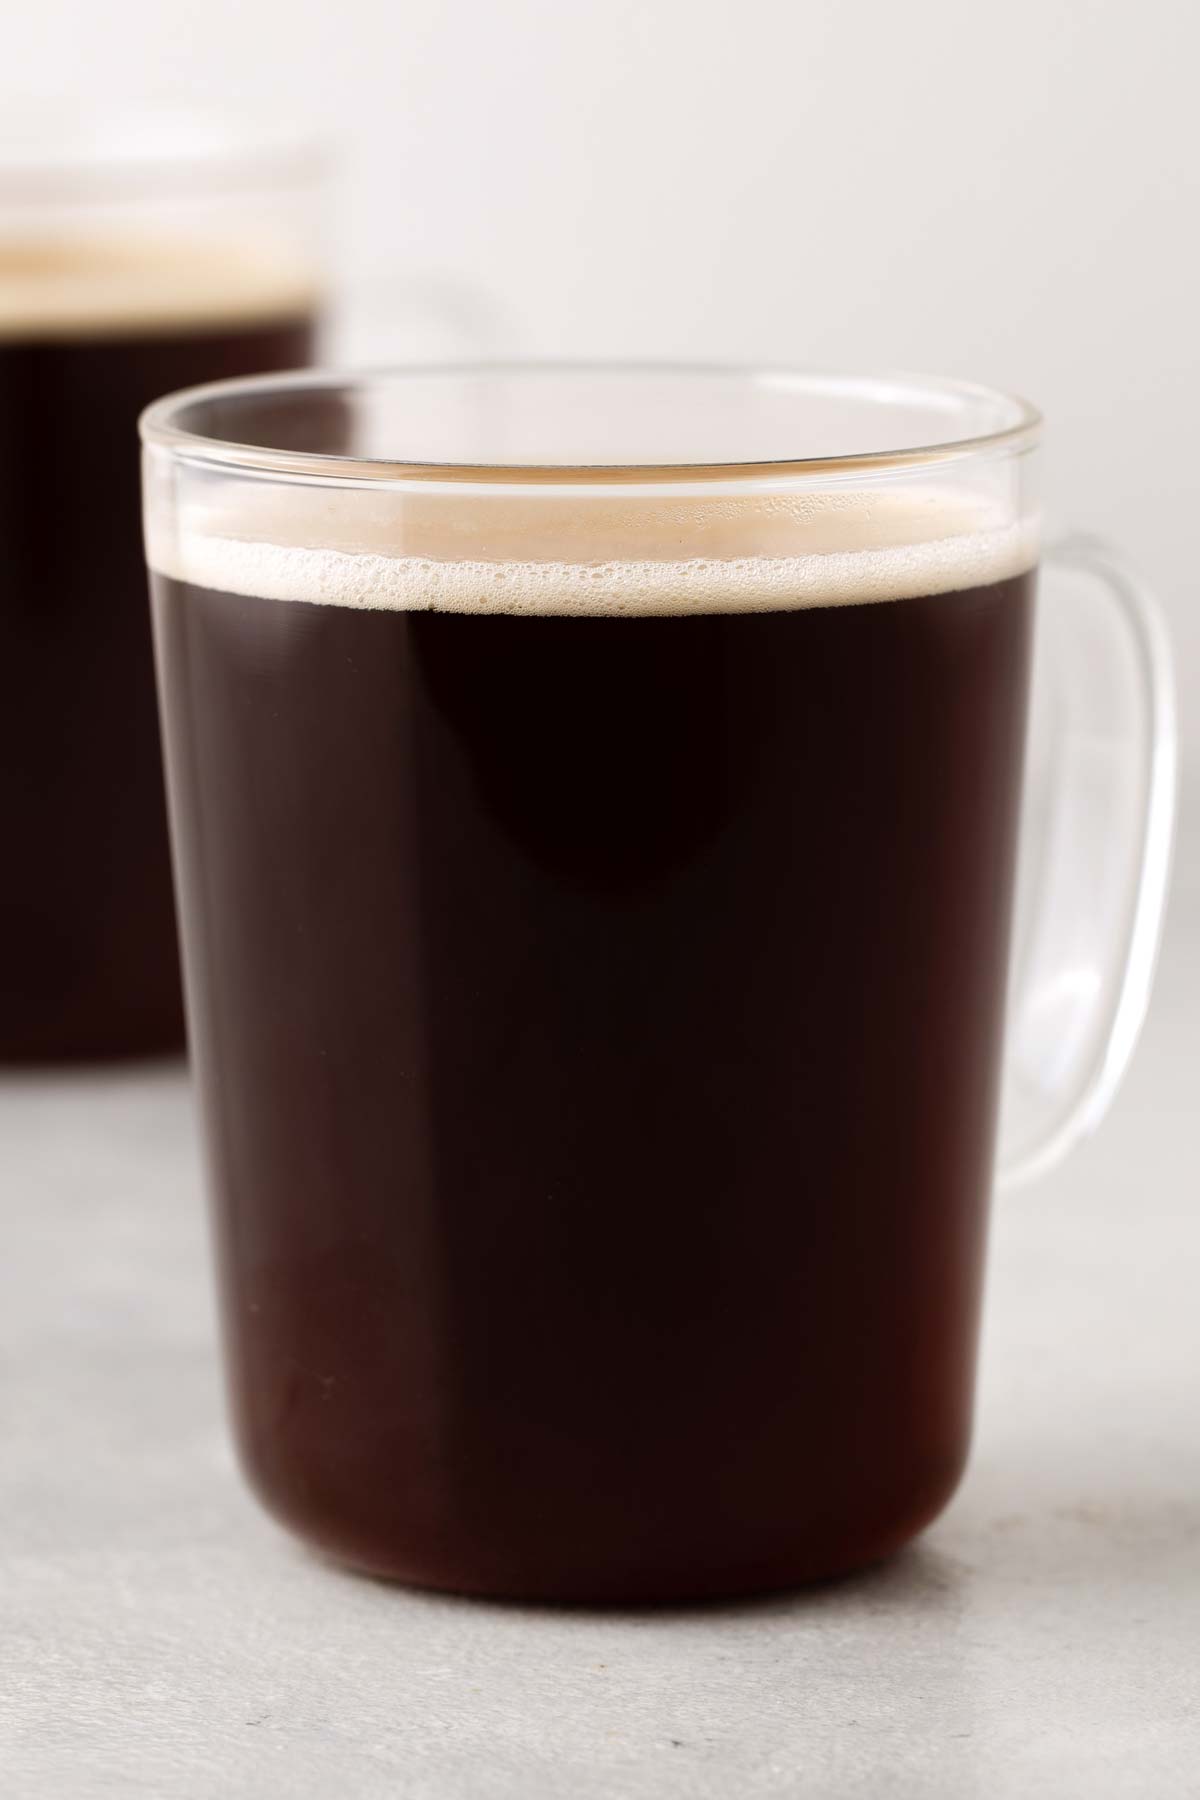 Americano coffee in a glass mug.